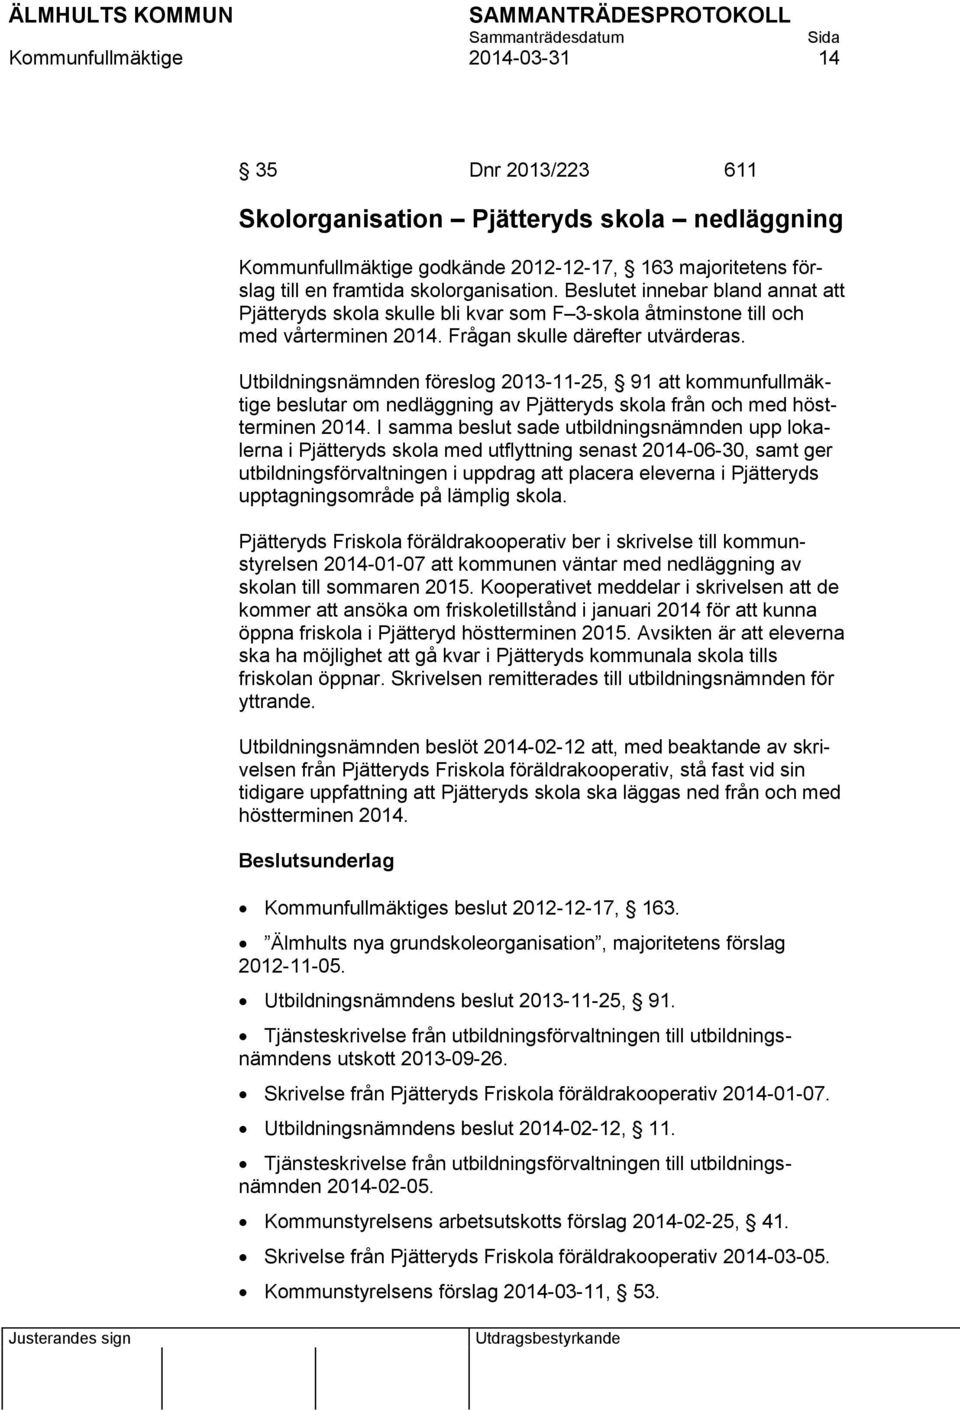 Utbildningsnämnden föreslog 2013-11-25, 91 att kommunfullmäktige beslutar om nedläggning av Pjätteryds skola från och med höstterminen 2014.